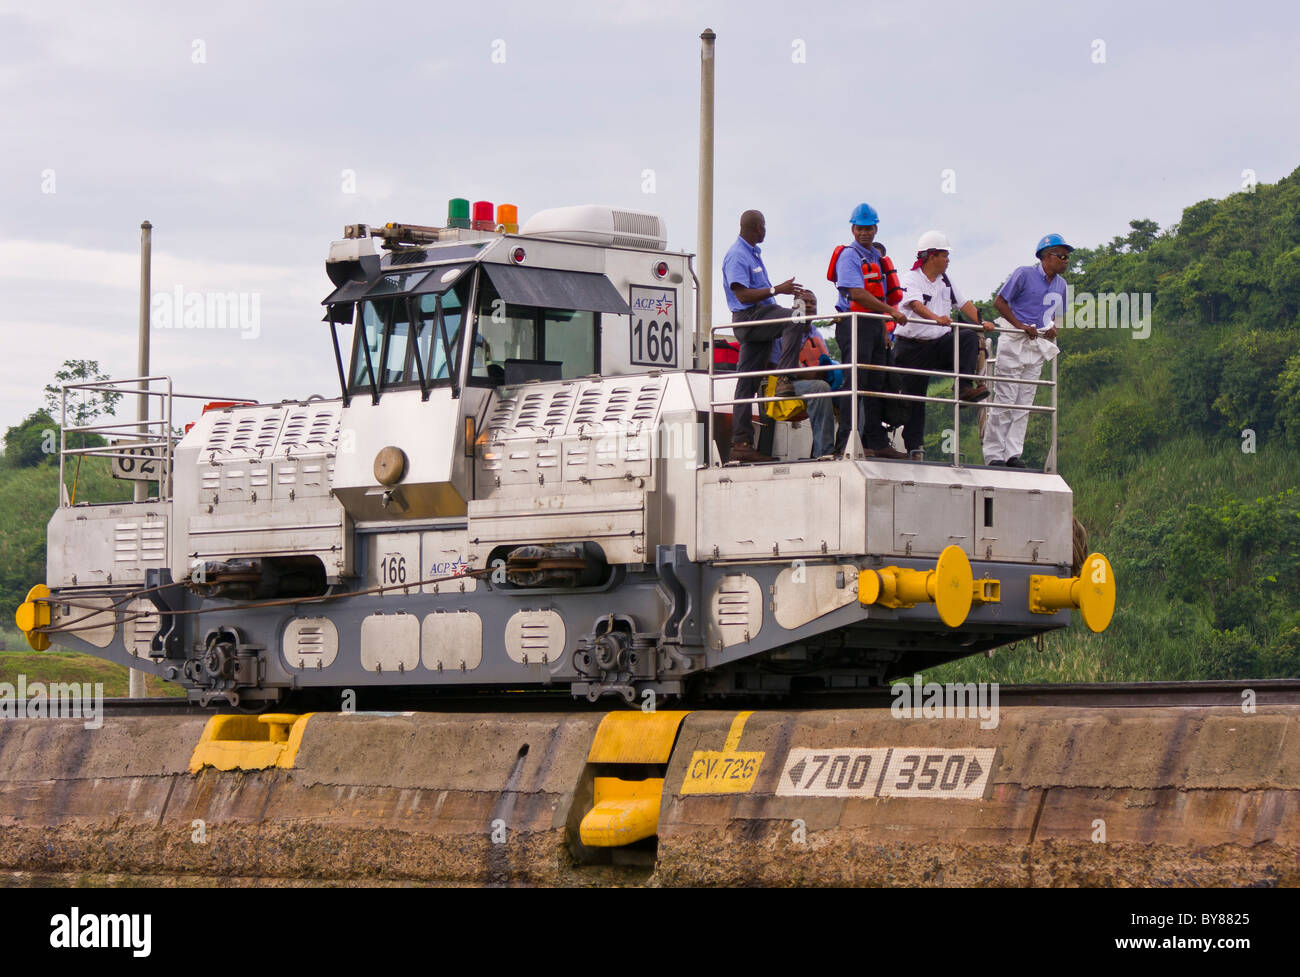 PANAMA - Arbeiter und elektrische Lokomotive auch bekannt als ein Maultier, Miraflores Locks auf Panama-Kanal. Stockfoto